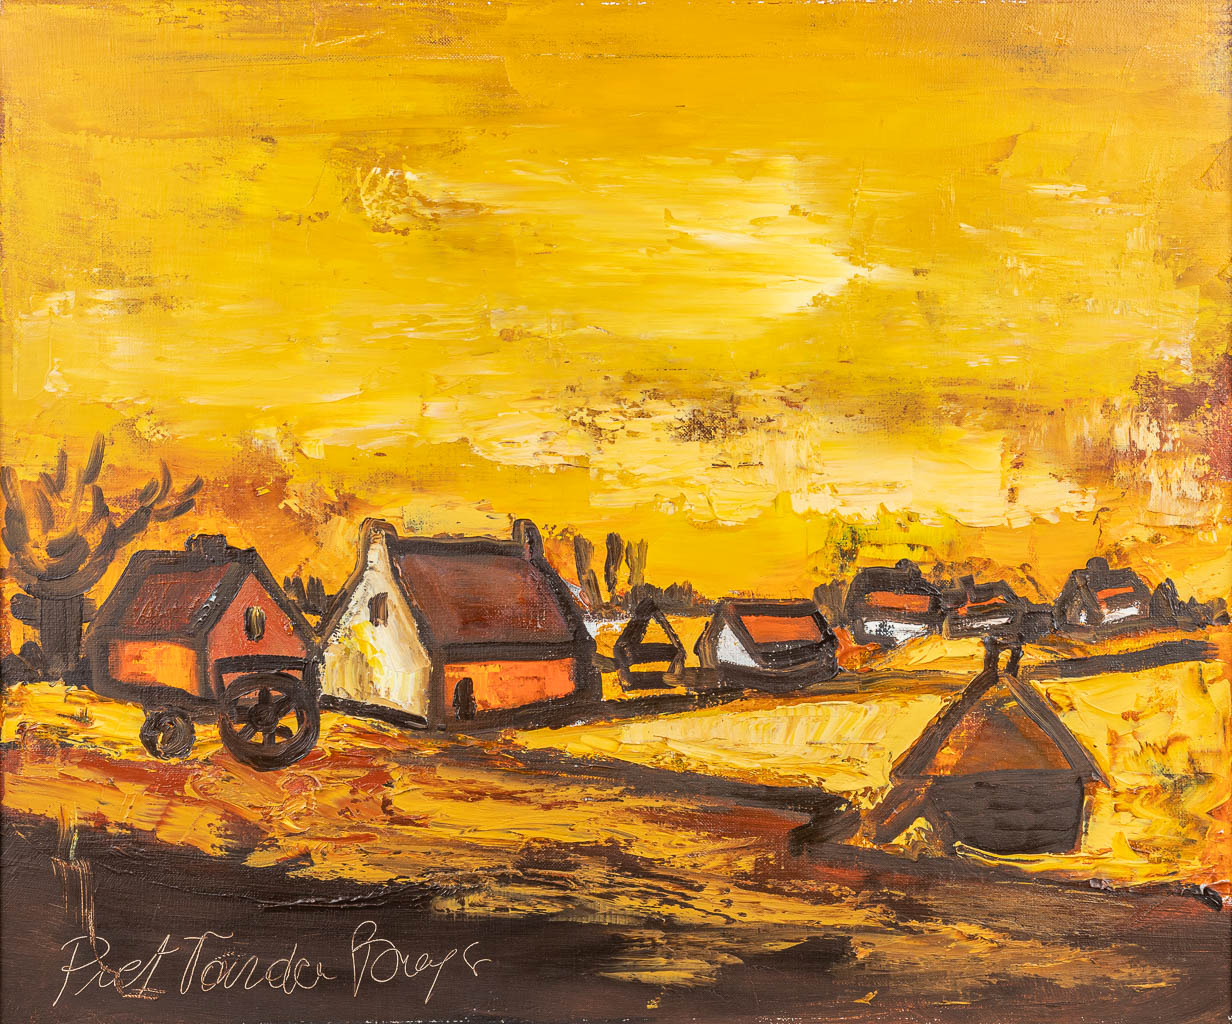 Piet VAN DEN BUYS (1935) 'Landscape' a painting, oil on canvas. (60 x 50 cm)